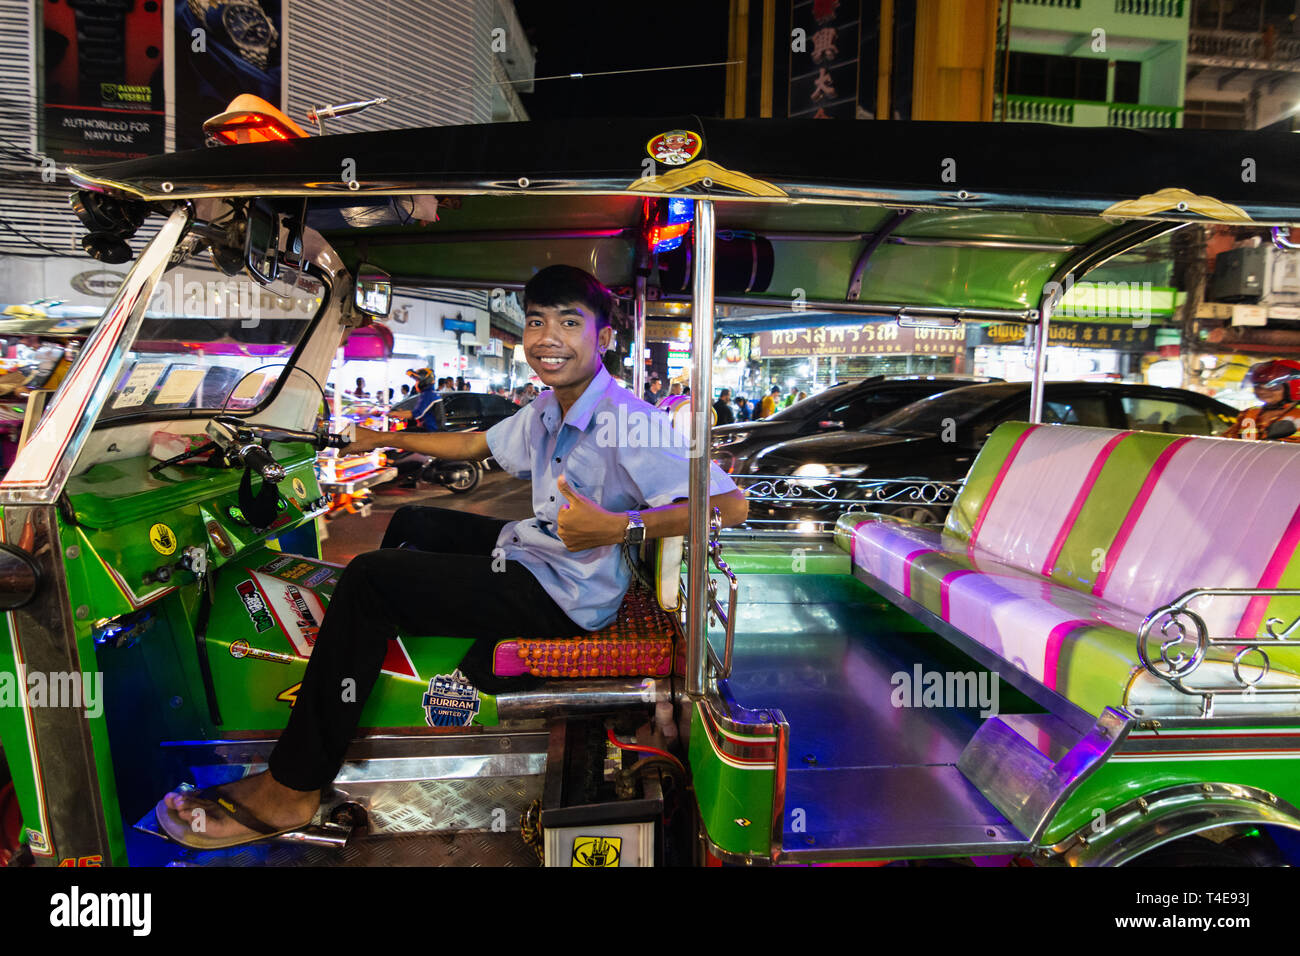 BANGKOK, THAILAND - MARCH 2019: tuk-tuk taxi driver at China town night market looking into the camera Stock Photo